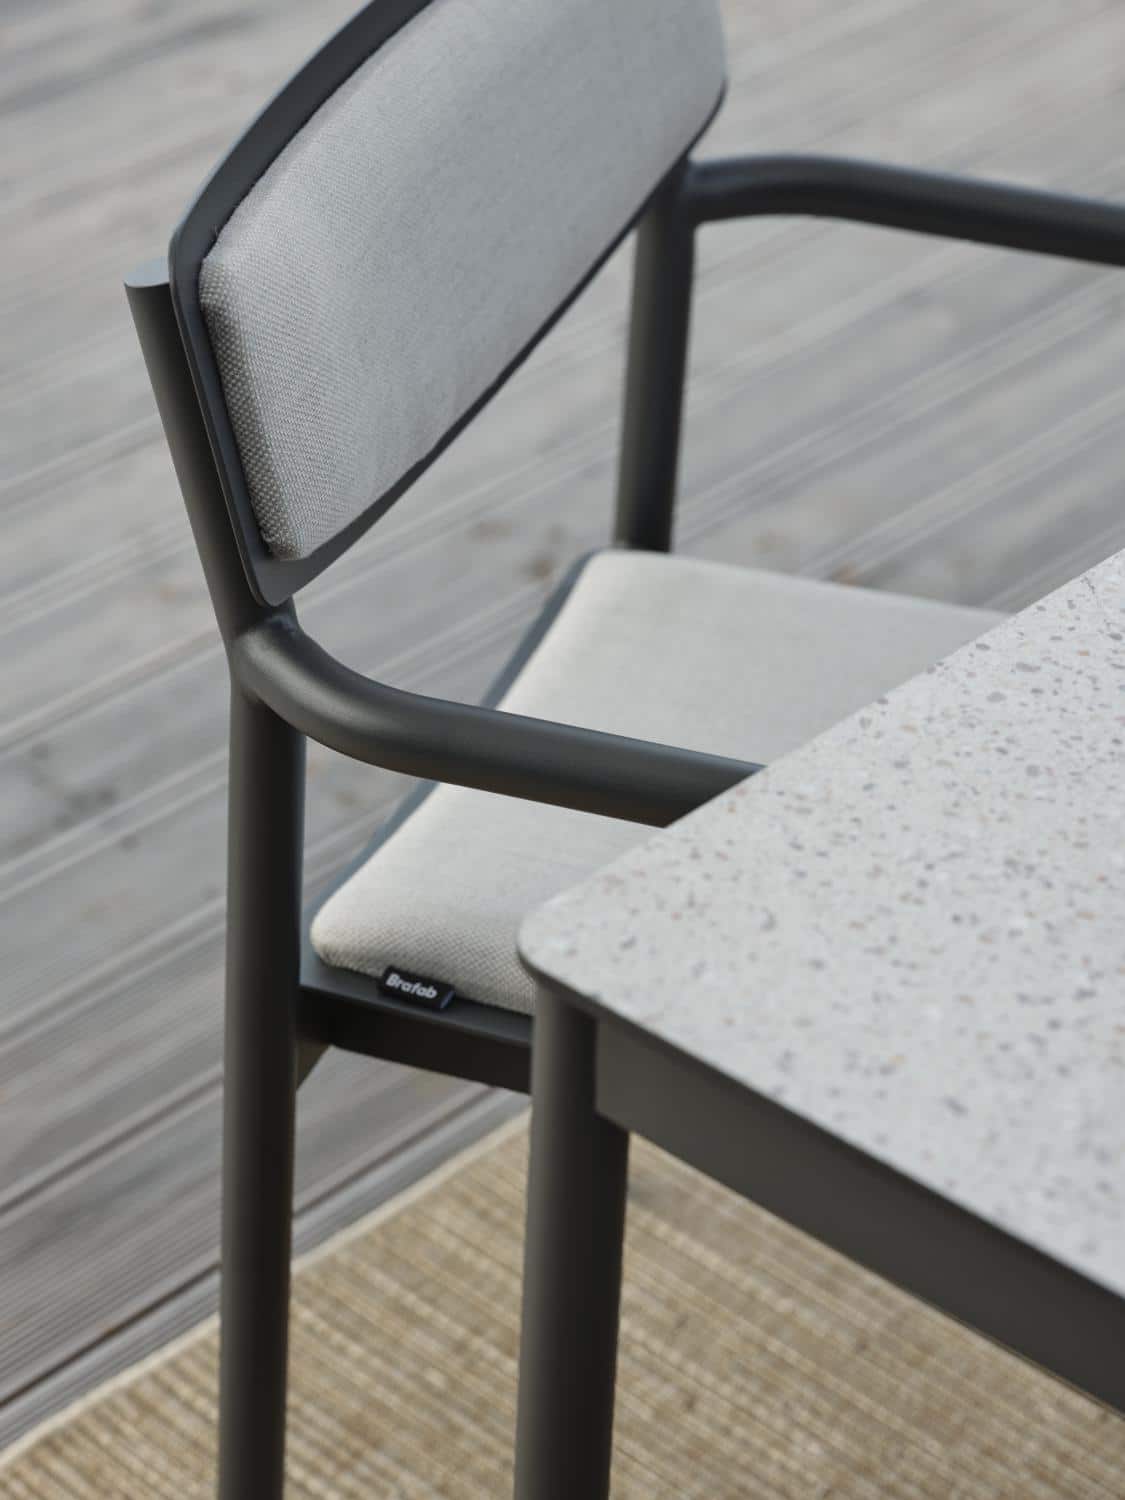 Brafab Gusty Karmstol grå i antracitgrå aluminium och sits/rygg i askfärgad akryl.